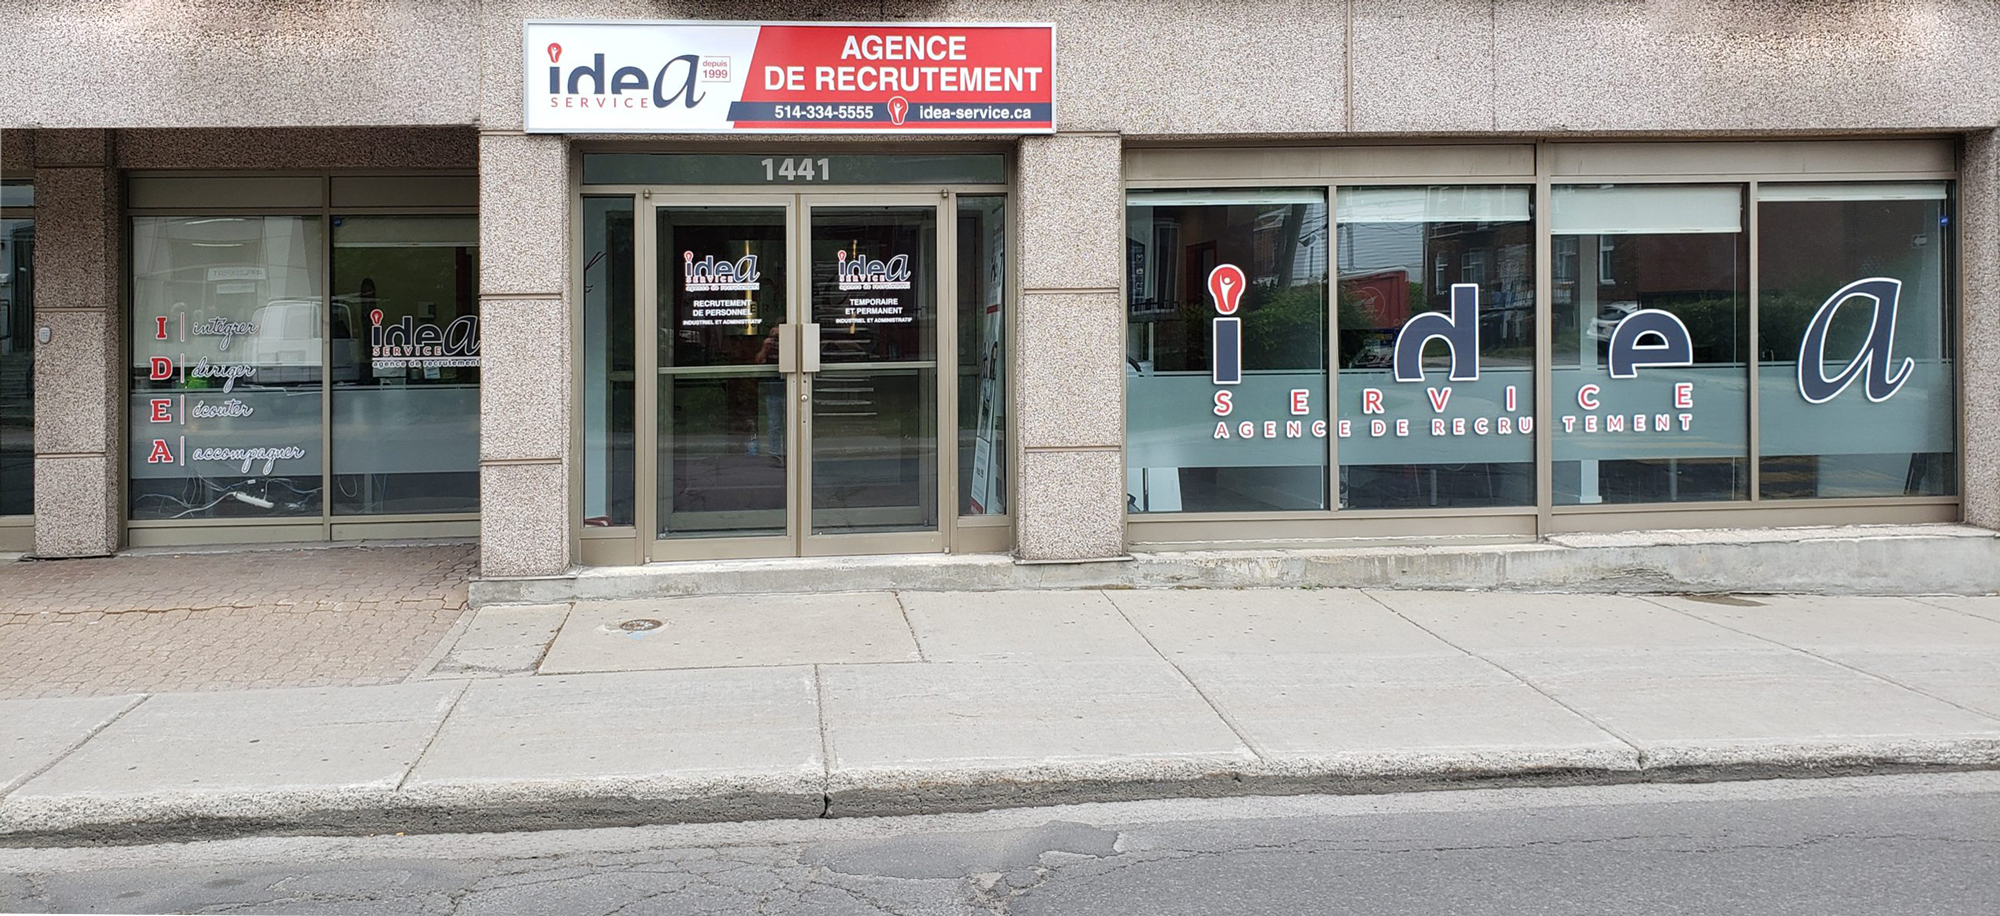 Agence de placement à Montréal IDEA Service